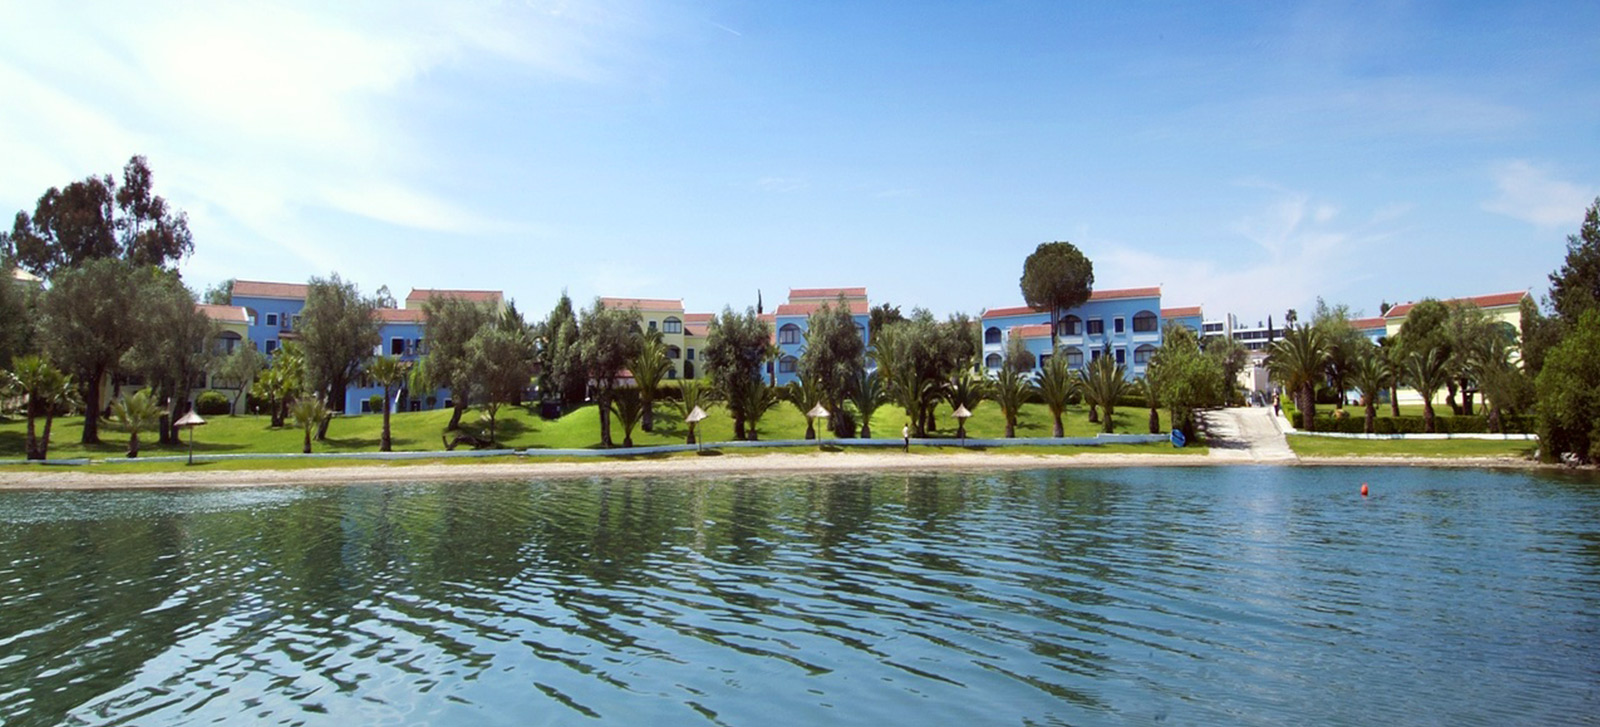 Govino Bay Apartments Resort